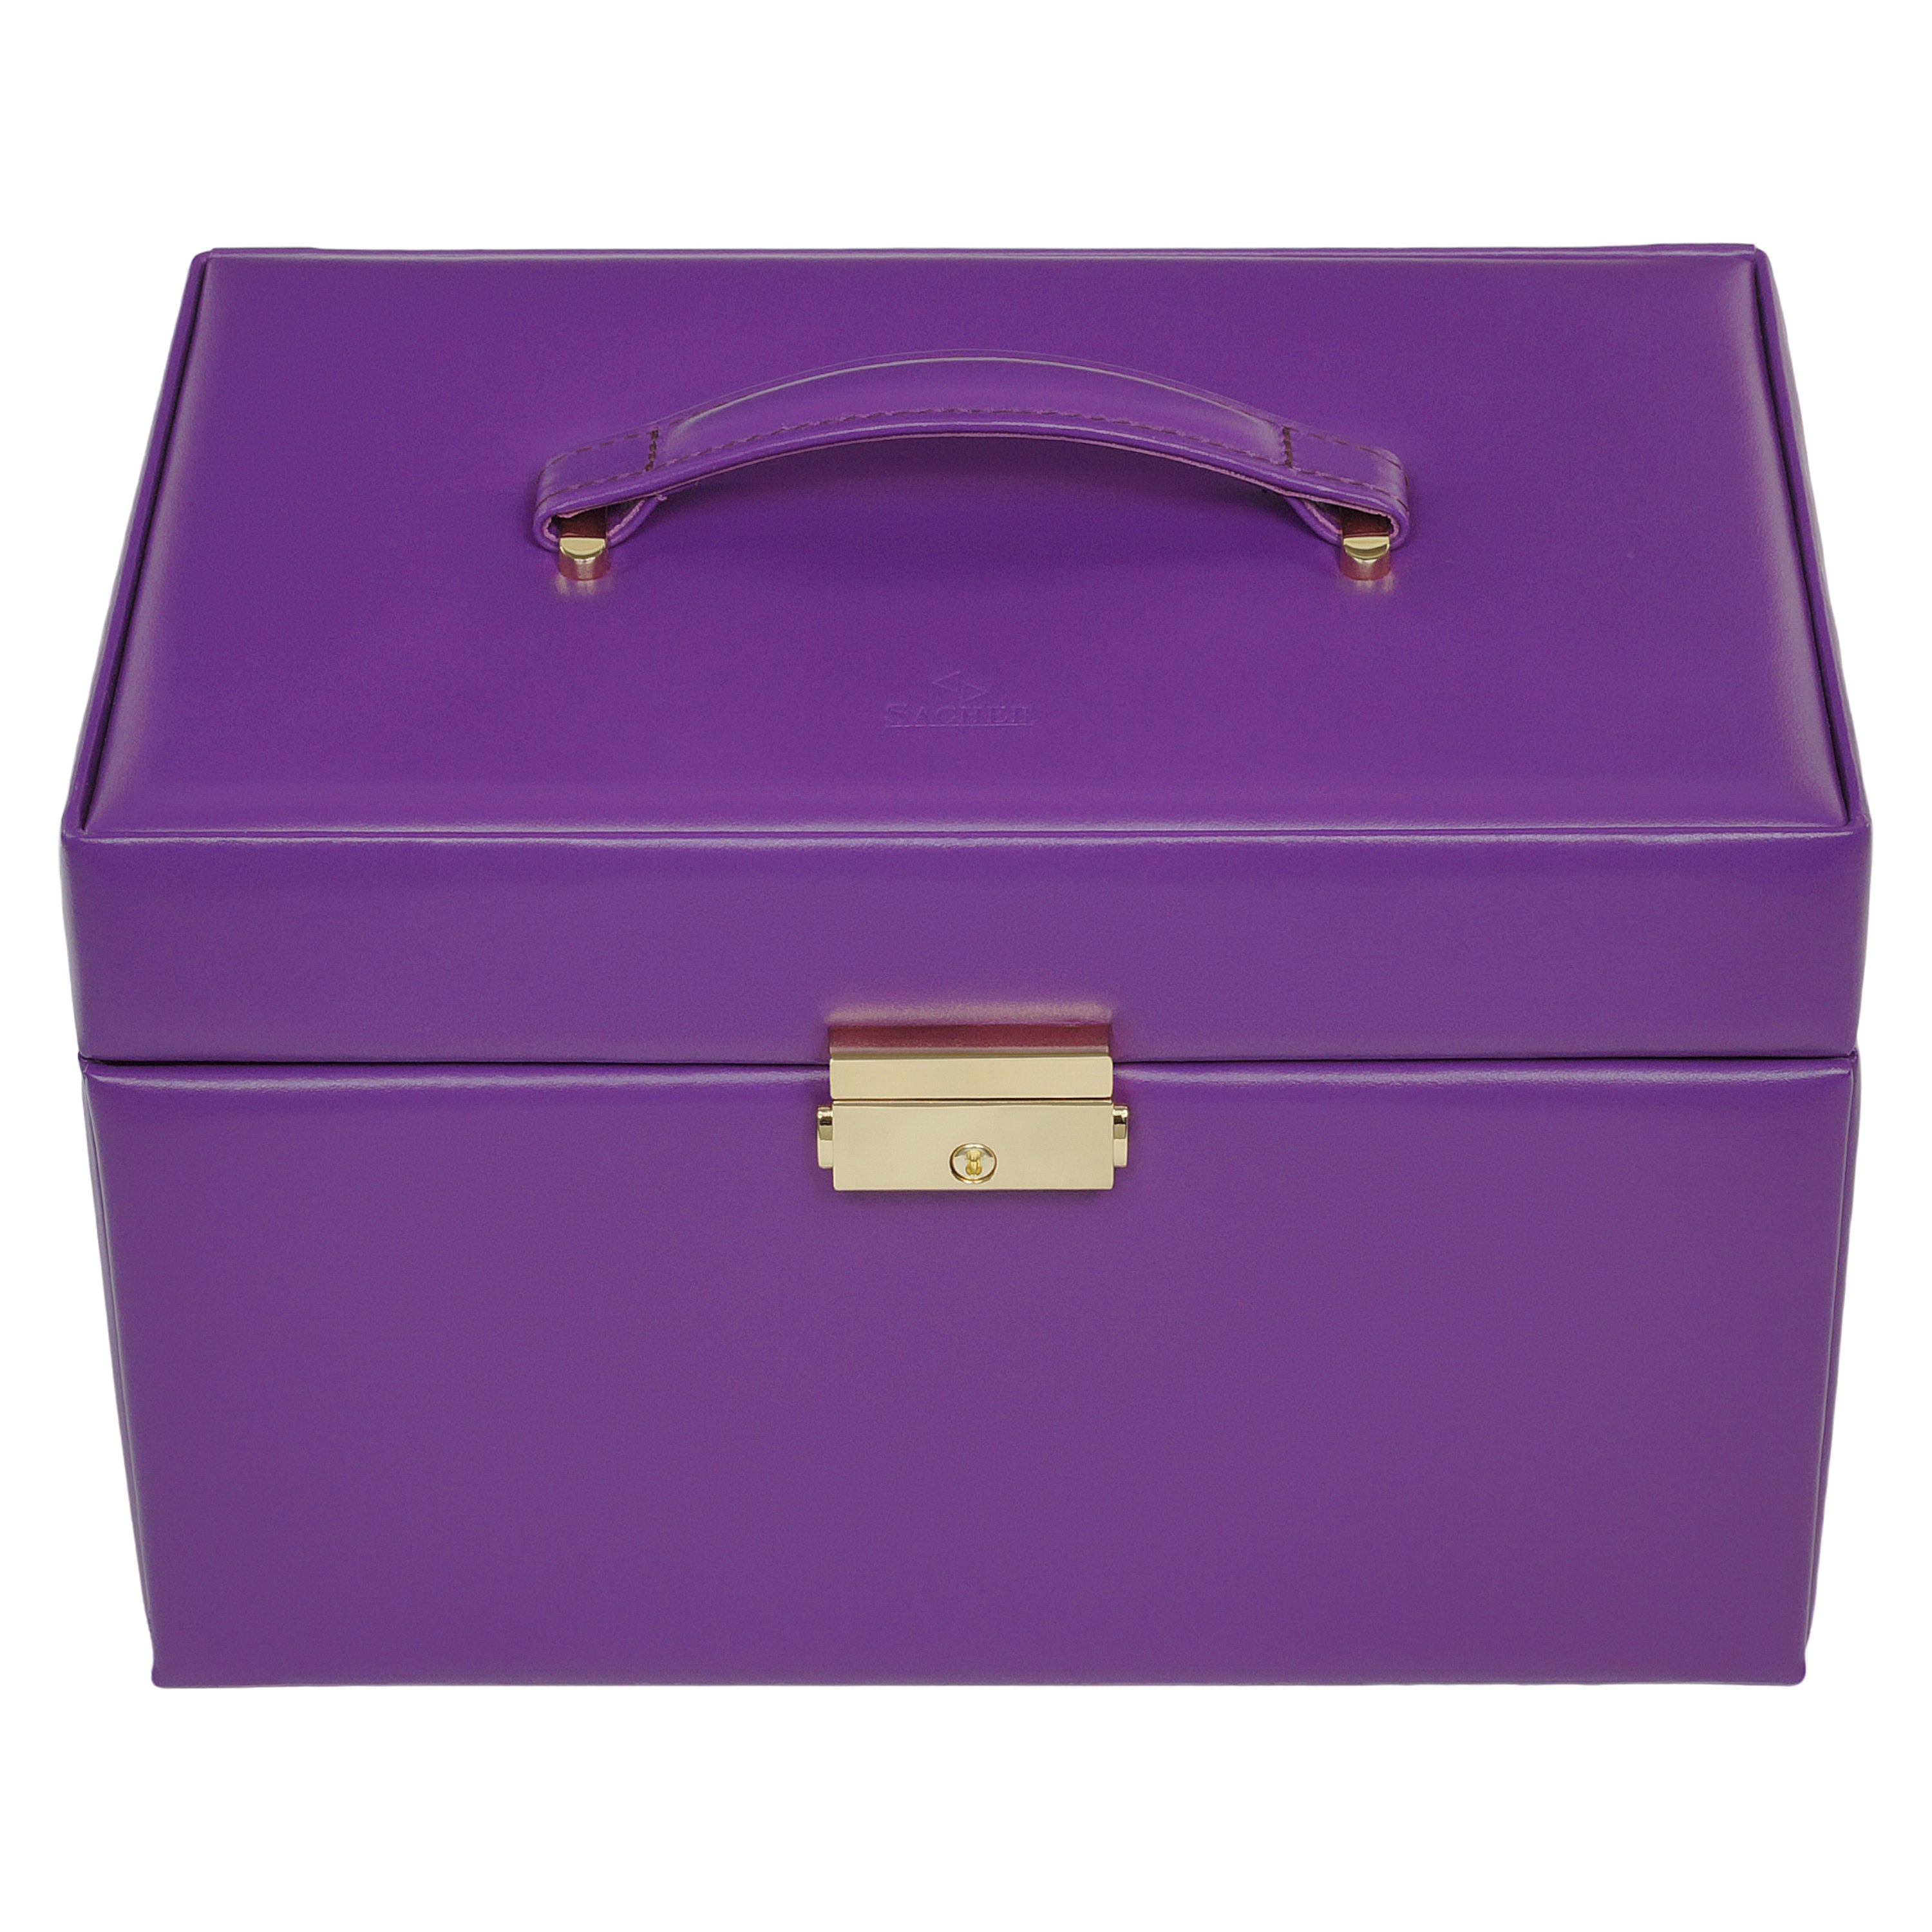 Boîte à bijoux Karen colisimo / violet (cuir pleine fleur) 